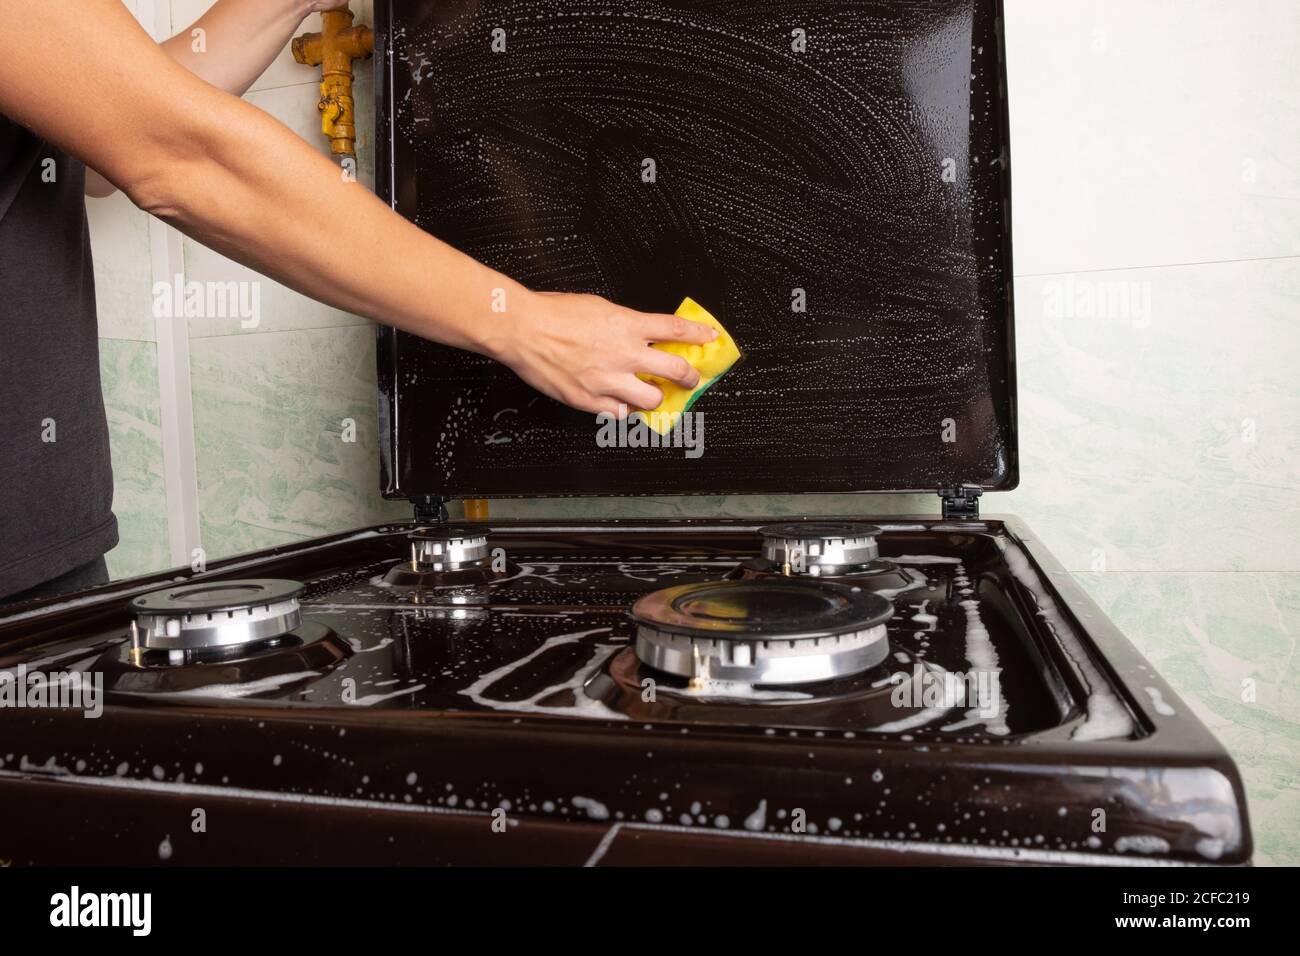 nettoyage de la cuisine, nettoyage de surface sur la cuisinière à gaz, lavage de la cuisinière avec un linge de toilette jaune, appareils ménagers de cuisine. Banque D'Images